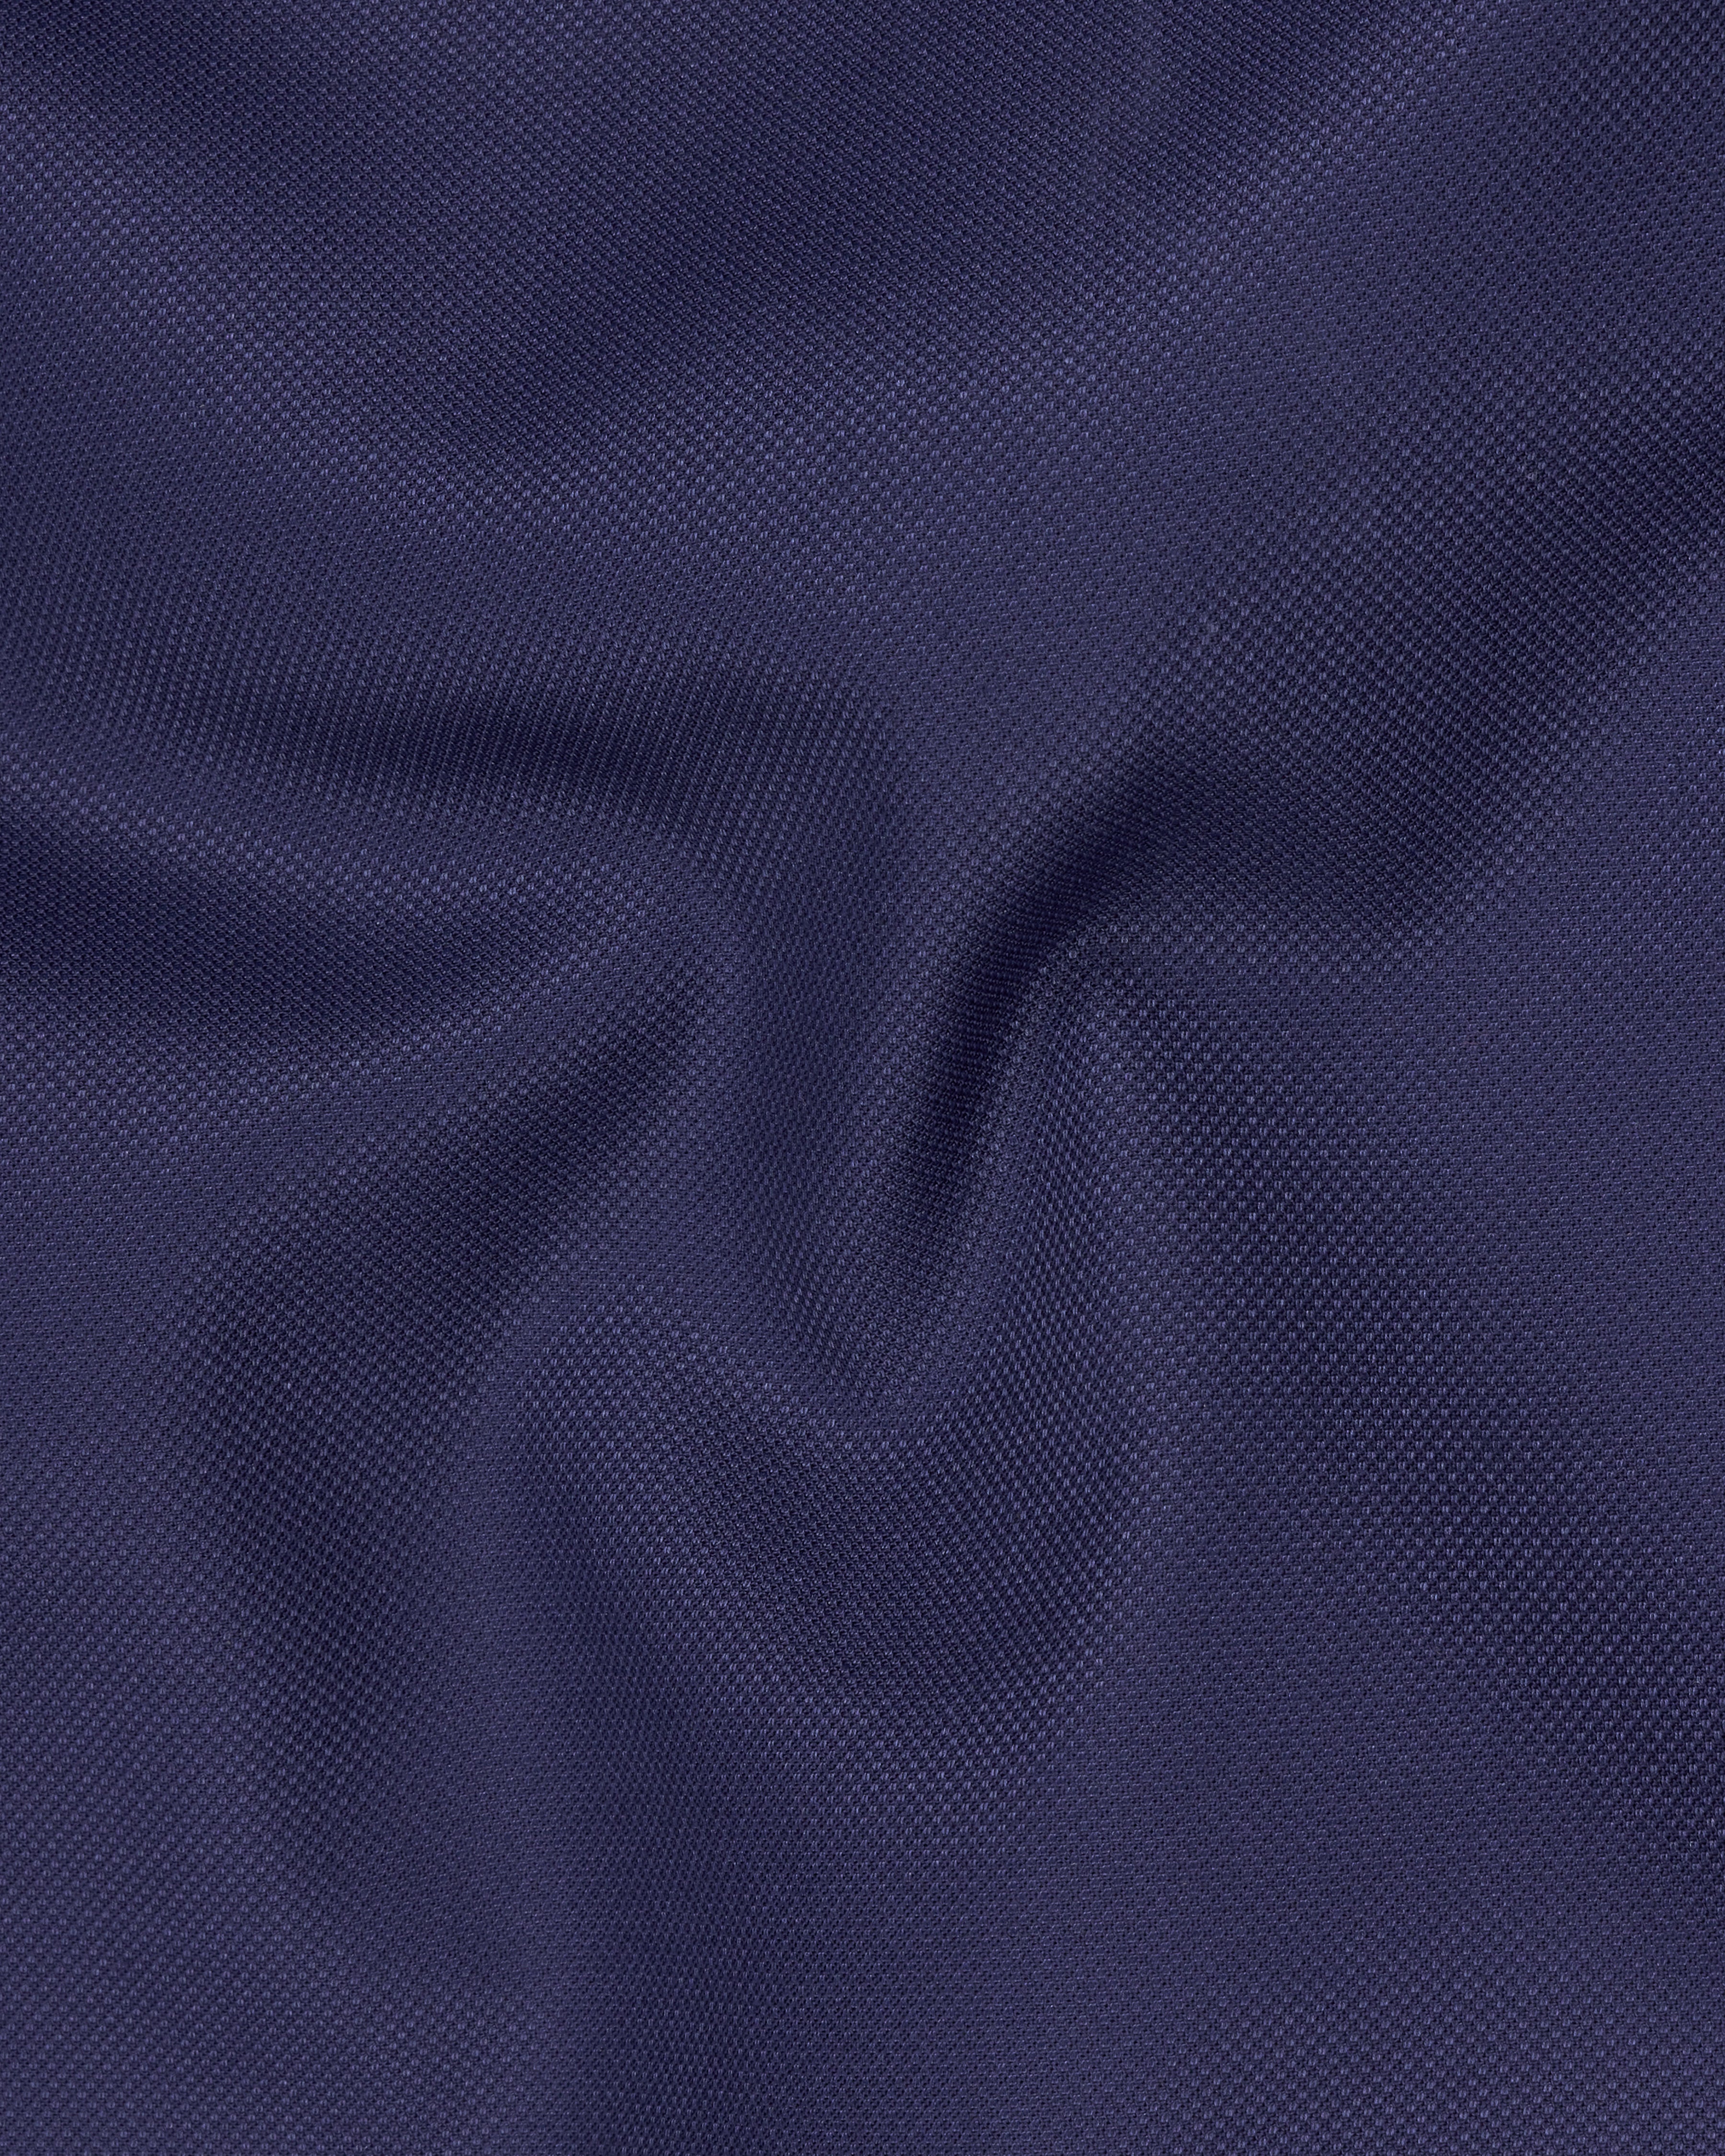 Ebony Clay Blue Textured Pant T2263-28, T2263-30, T2263-32, T2263-34, T2263-36, T2263-38, T2263-40, T2263-42, T2263-44